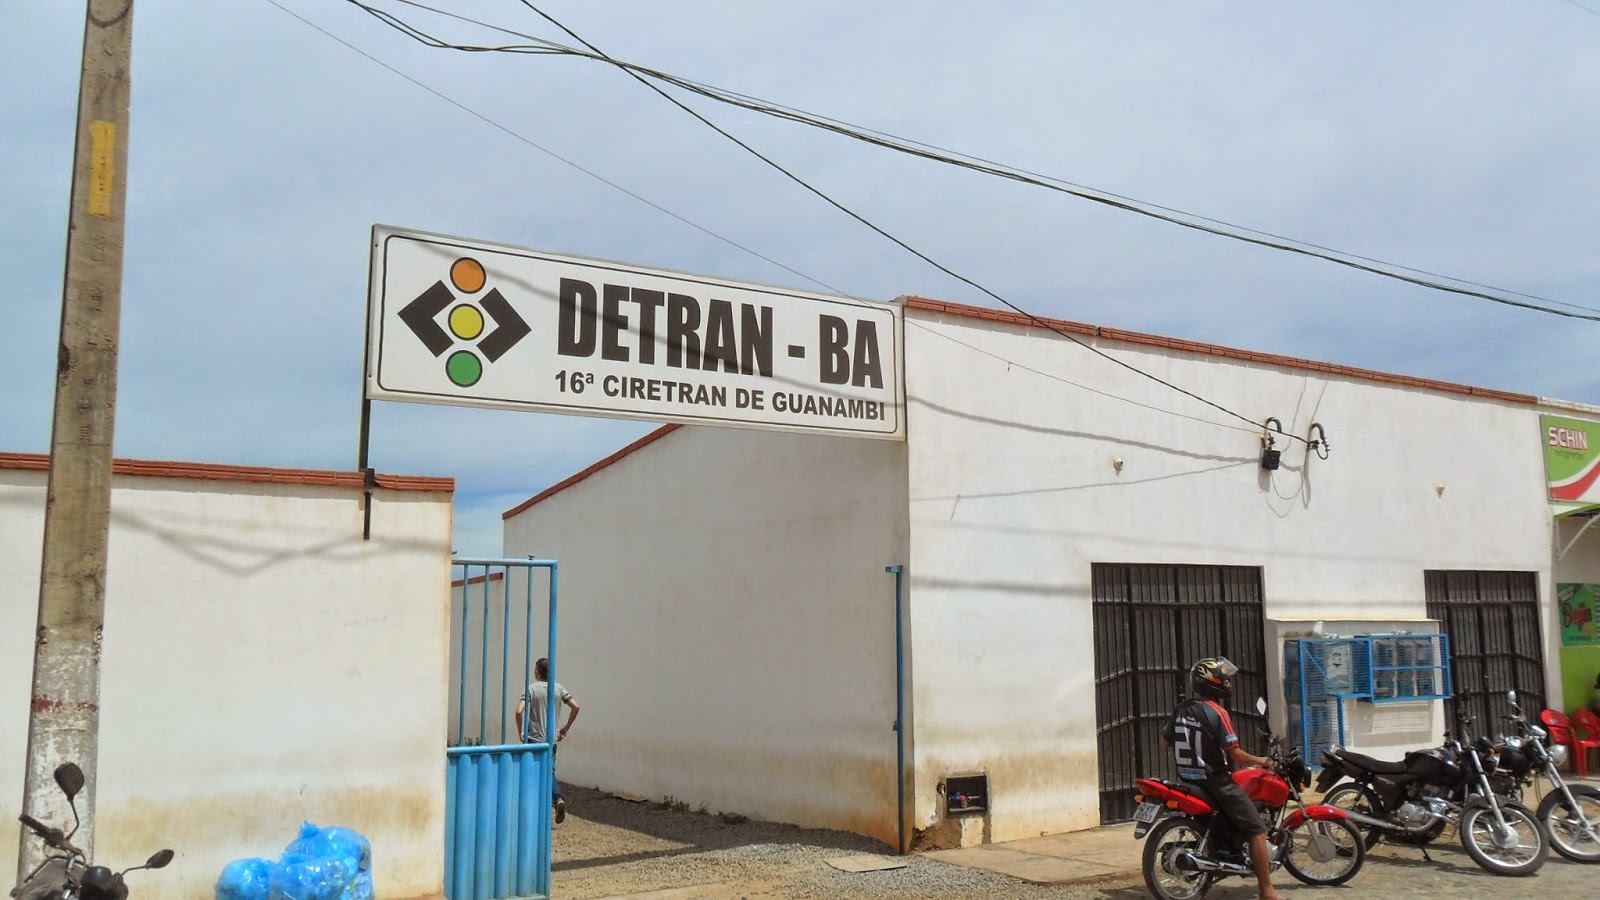 Denúncias de irregularidades resultam em sindicância nas Ciretrans de Guanambi e outras cidades